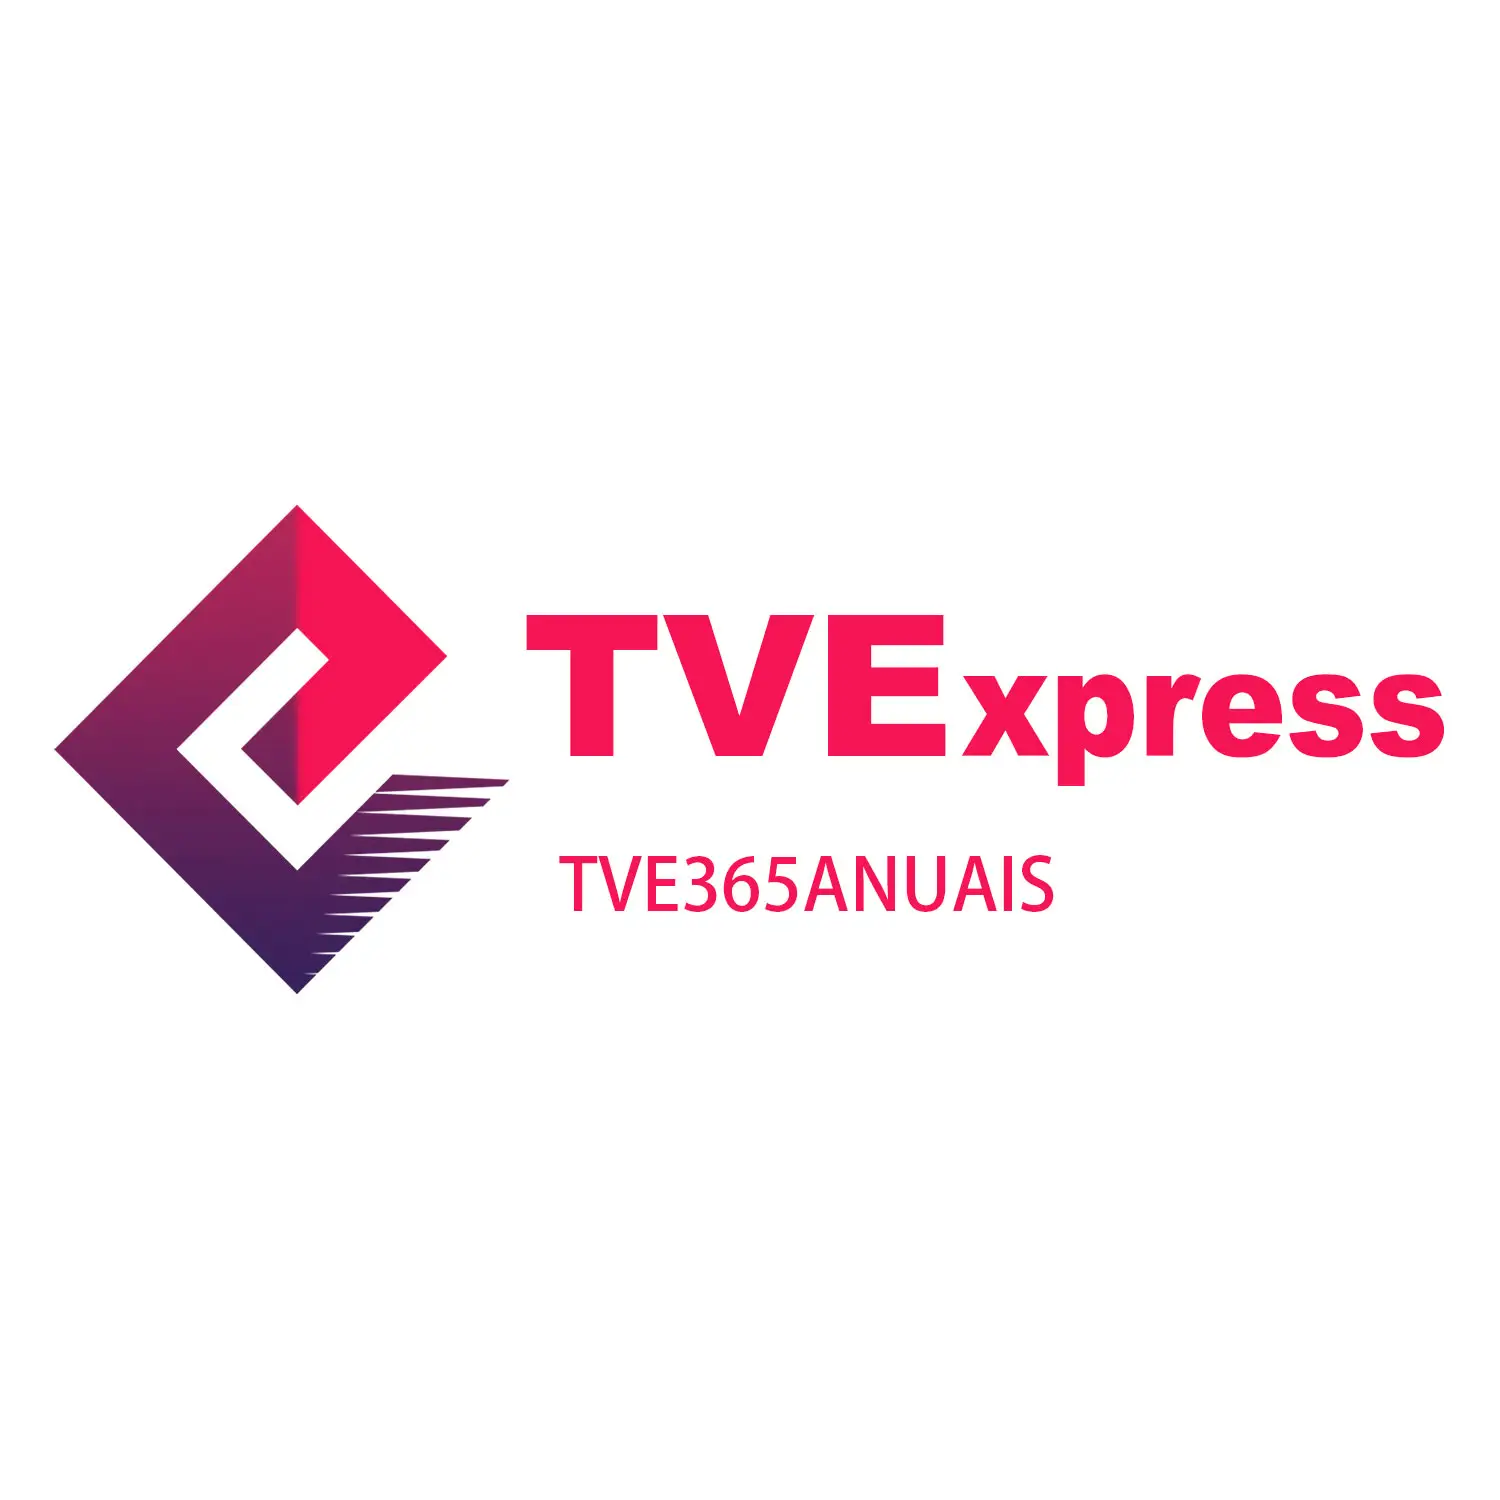 Sıcak satış Tve brezilya aylık TVExpress TVexpresso yıllık tv express hediye kartı Cartao yıllık TVE